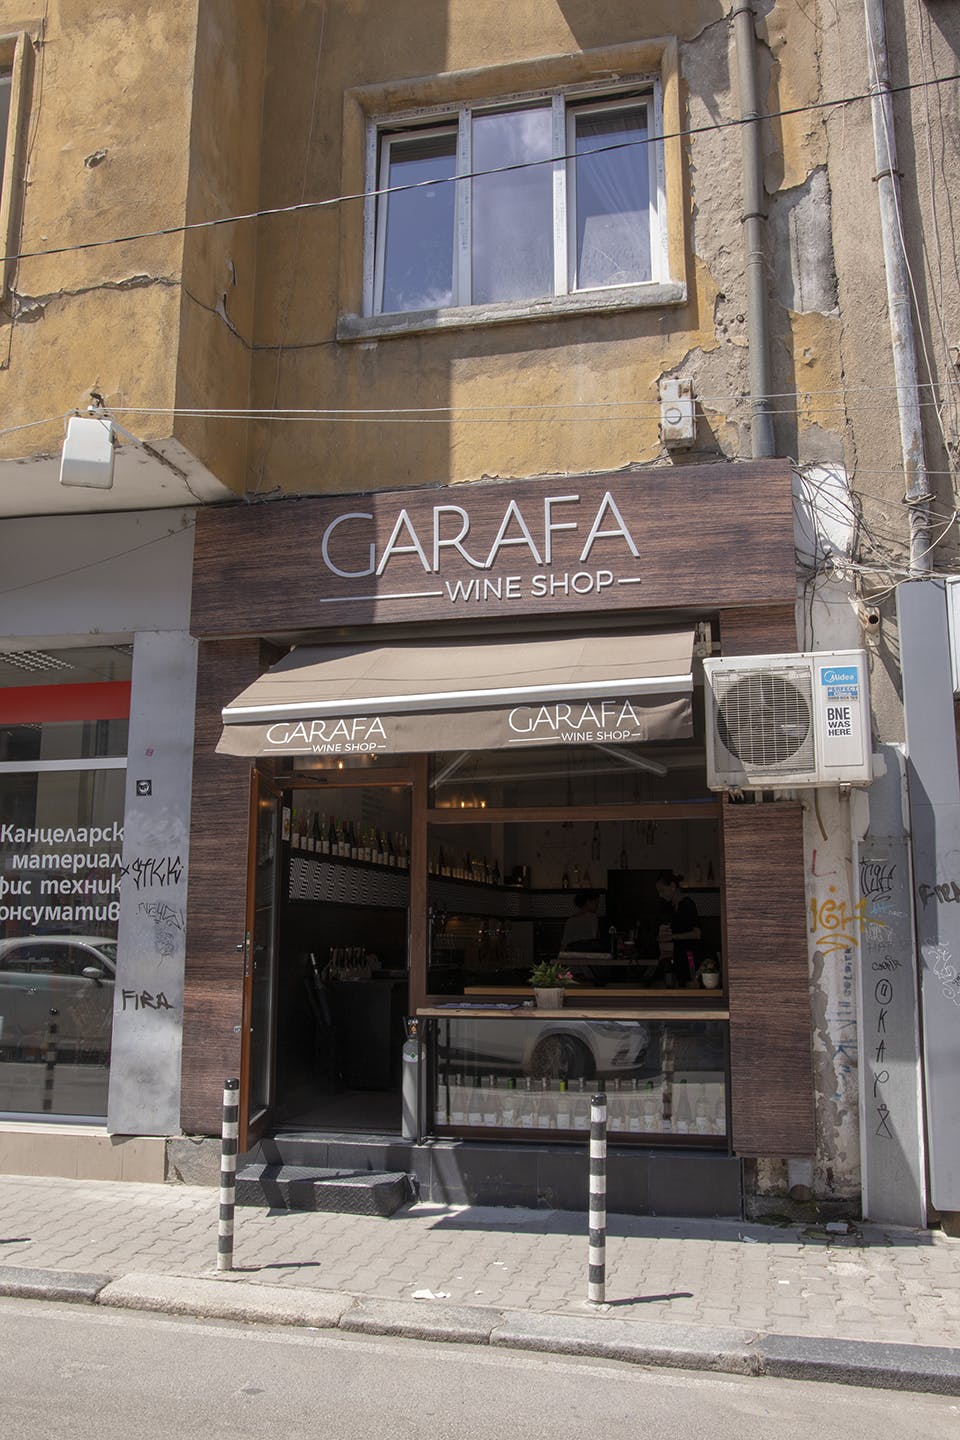 Image - Garafa Wine Shop